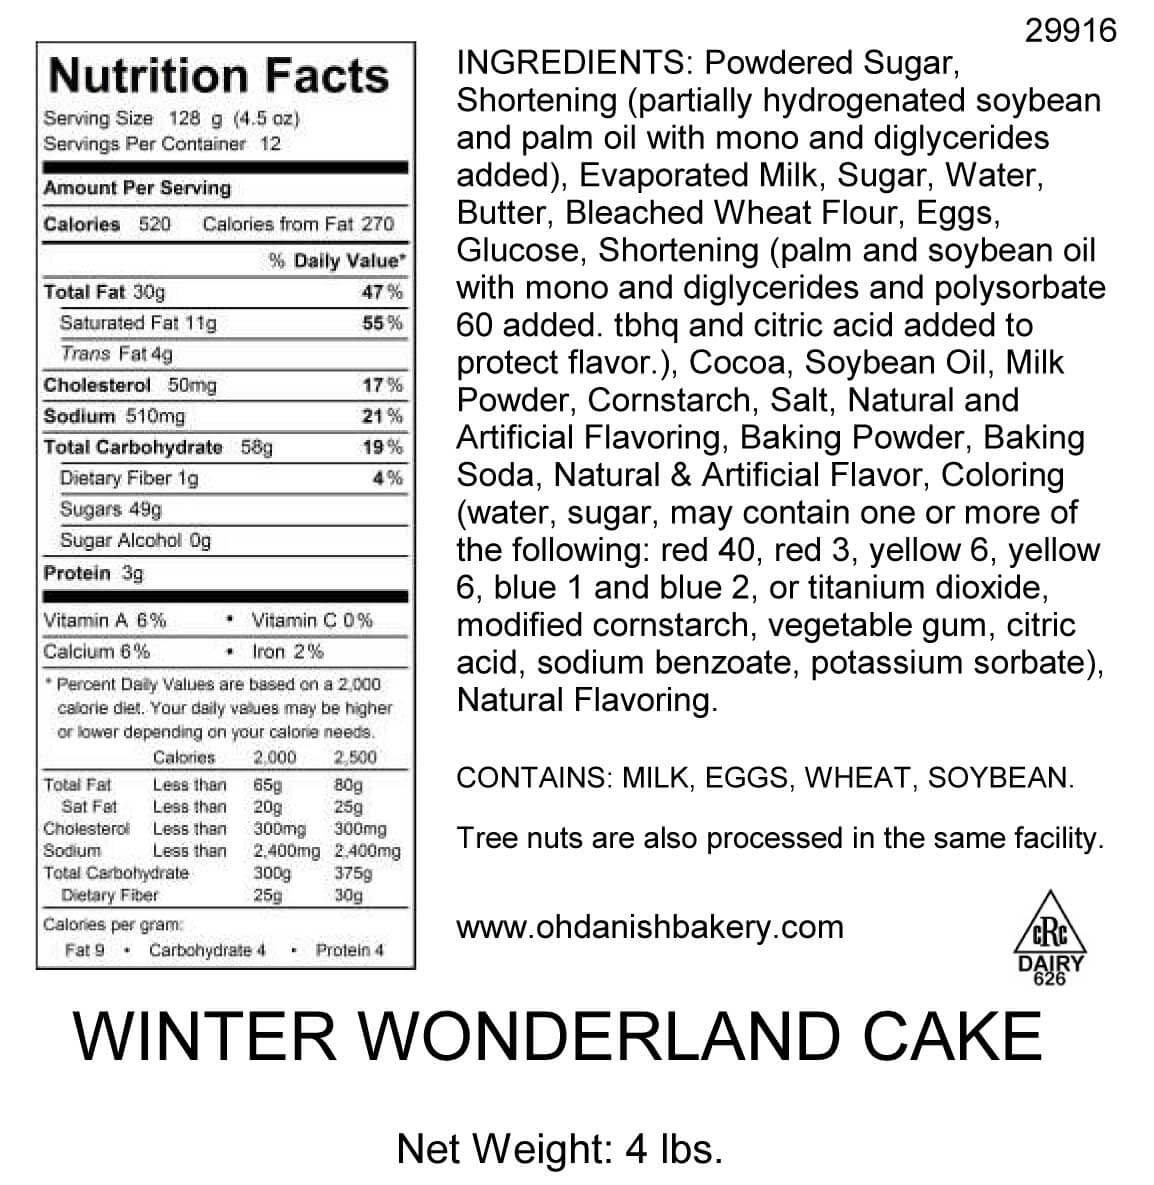 Nutritional Label for Winter Wonderland Cake